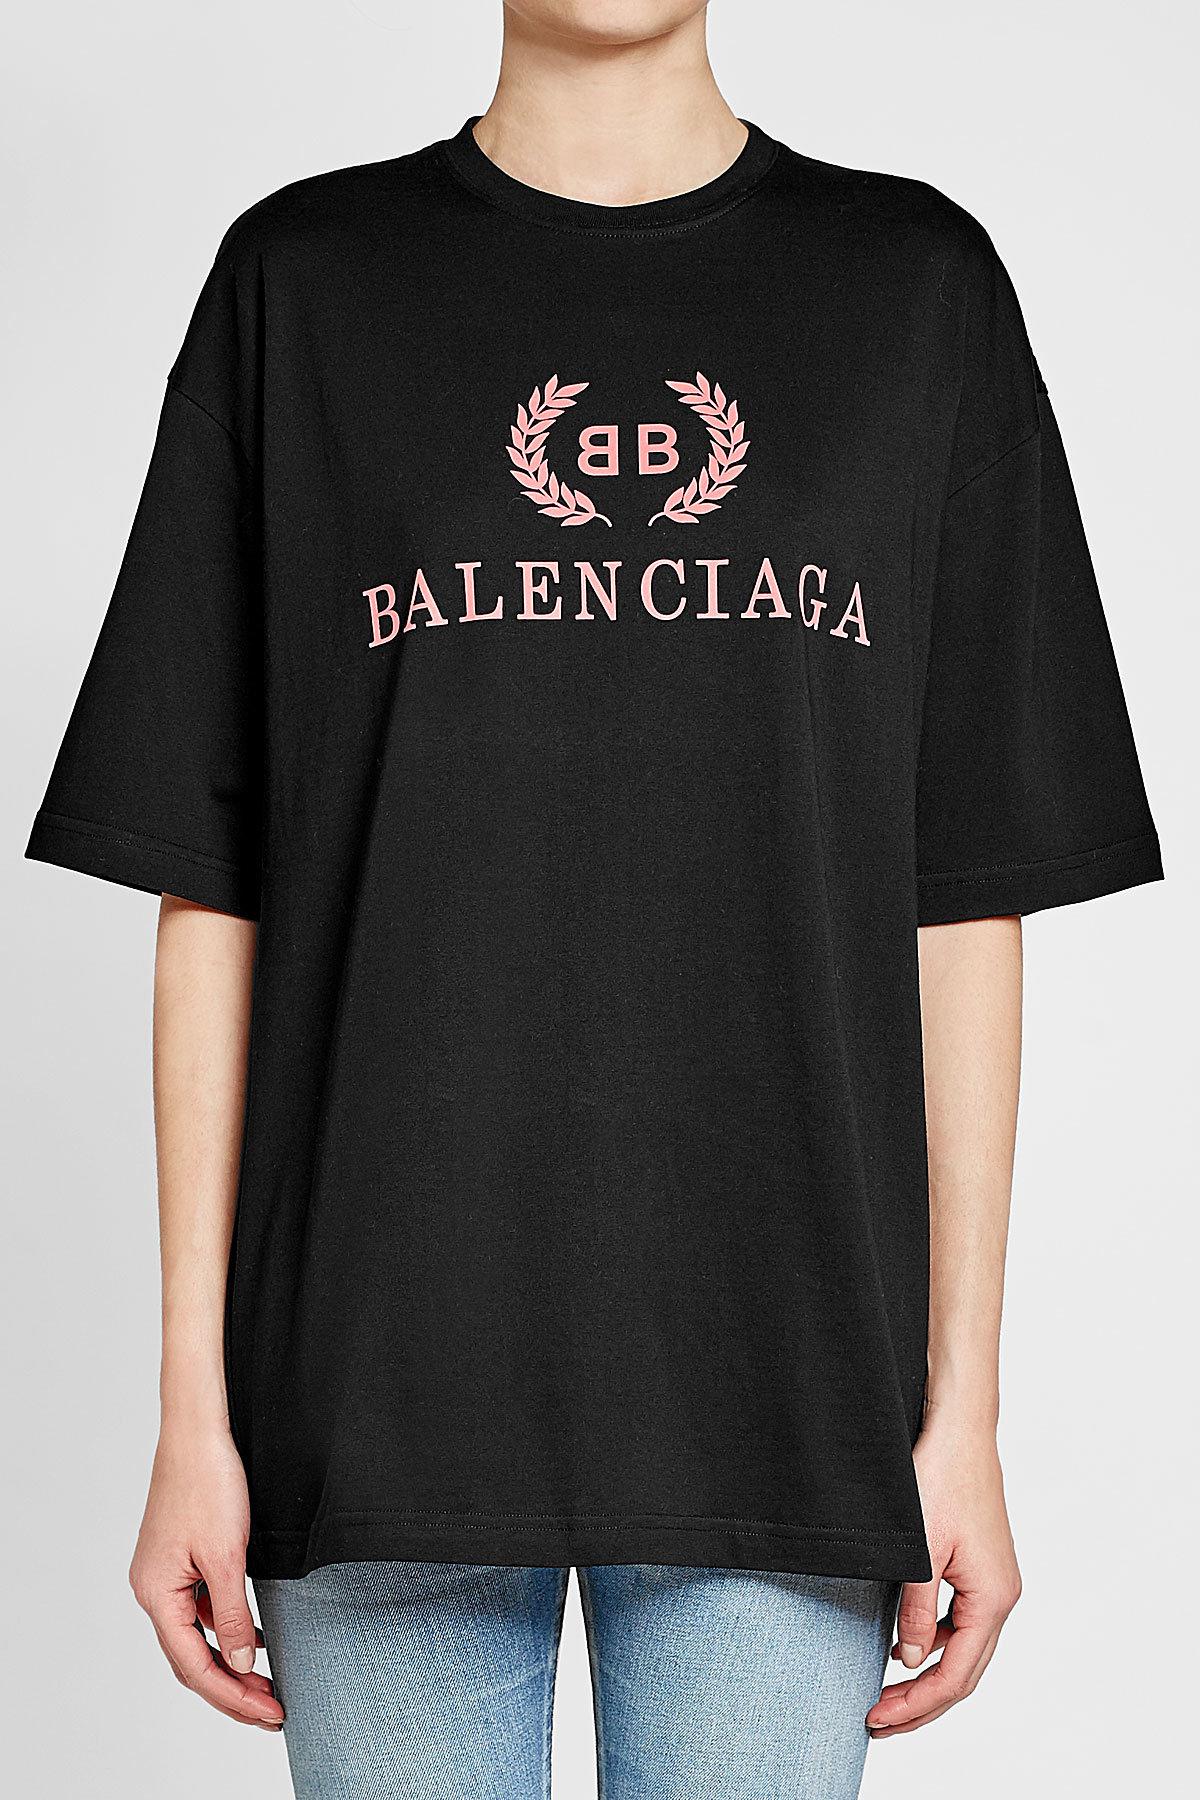 Balenciaga Logo Shirt - Black Balenciaga Paris logo cotton T-shirt